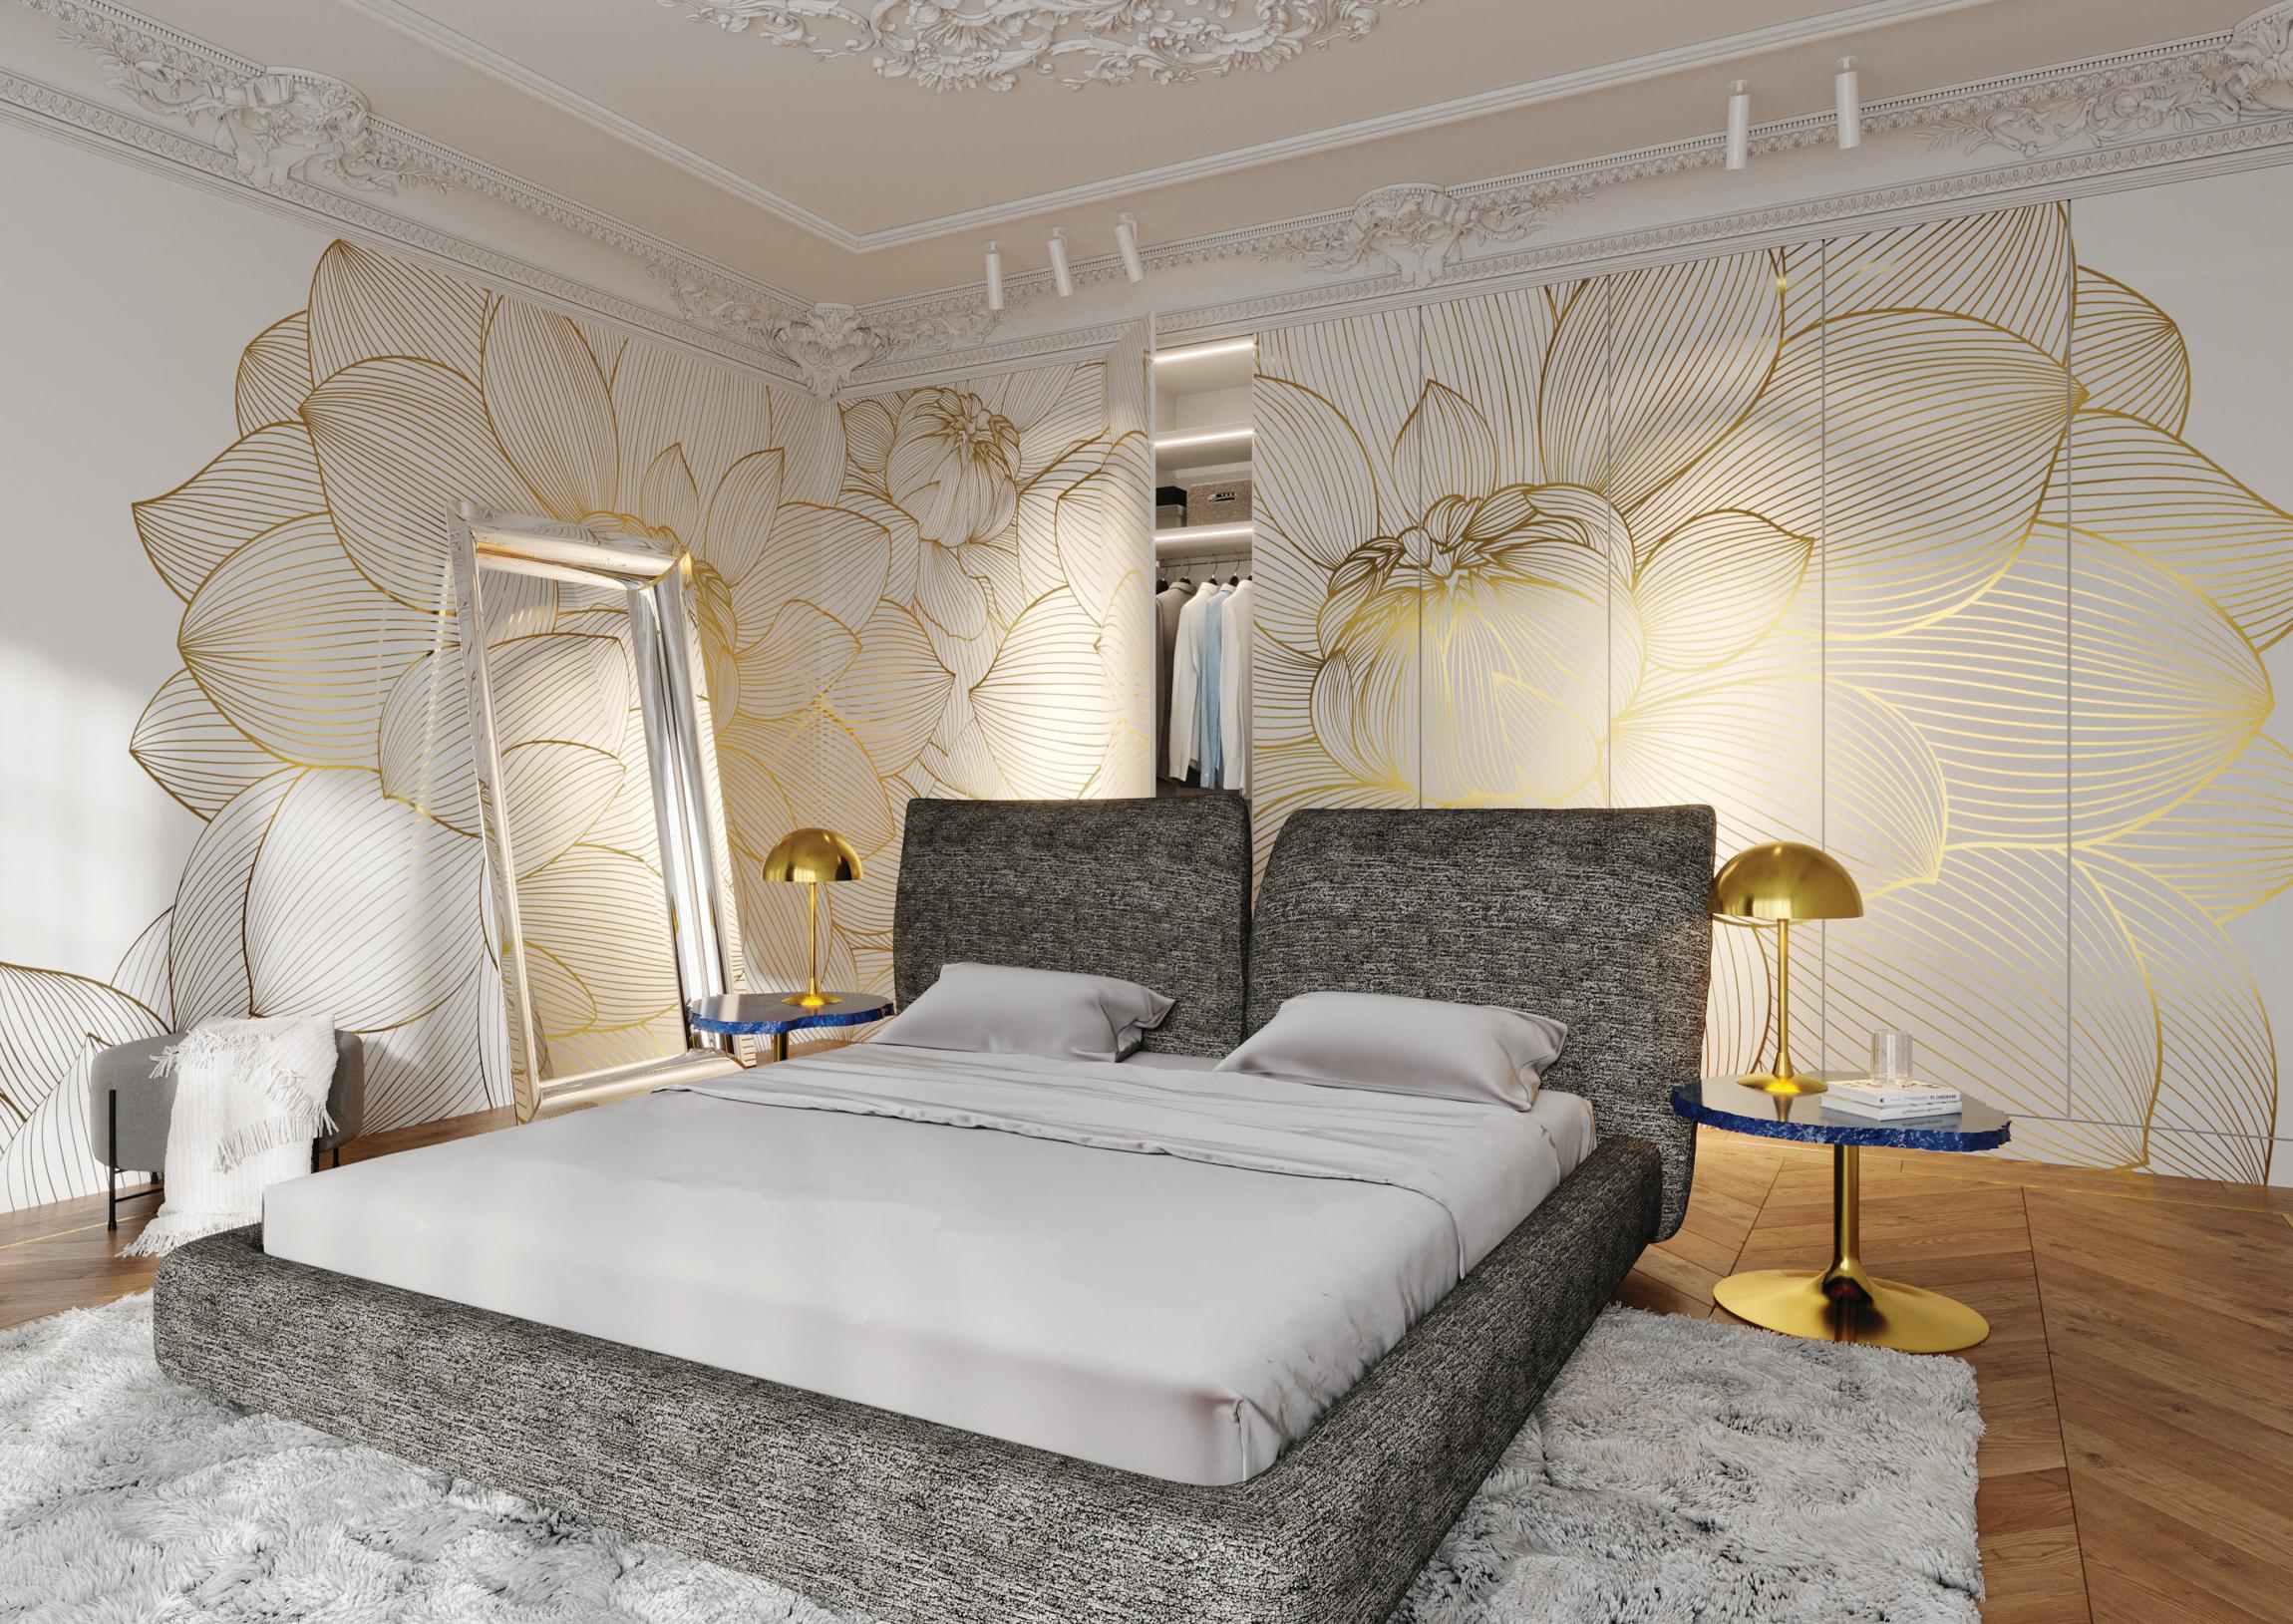 Sypialnia z dużą zabudową ścienną w kolorze białym, ozdobiona złotymi elementami